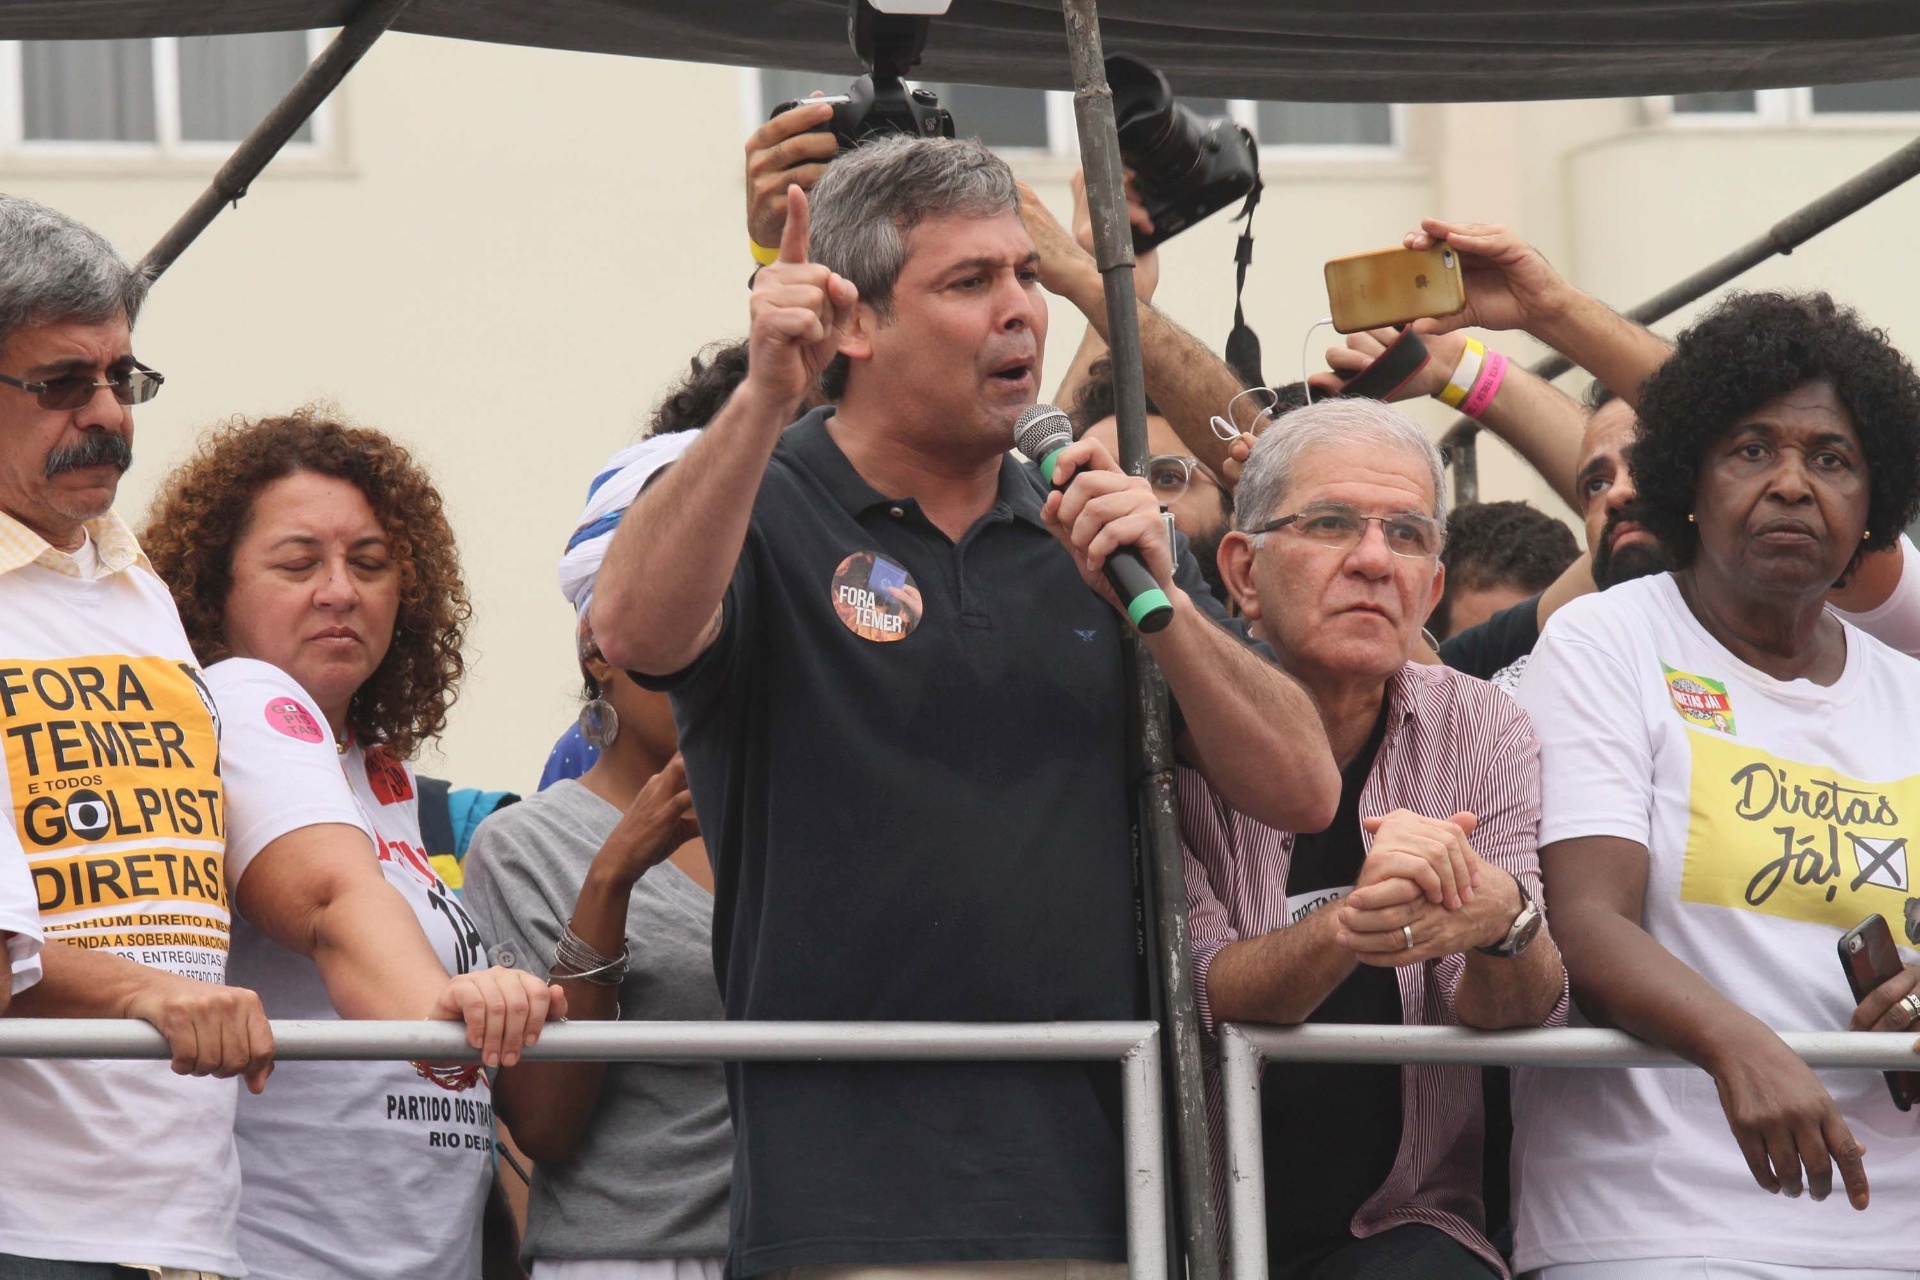 Artistas E Políticos Pedem Fora Temer E Diretas Já Em Protesto Em Copacabana 28052017 